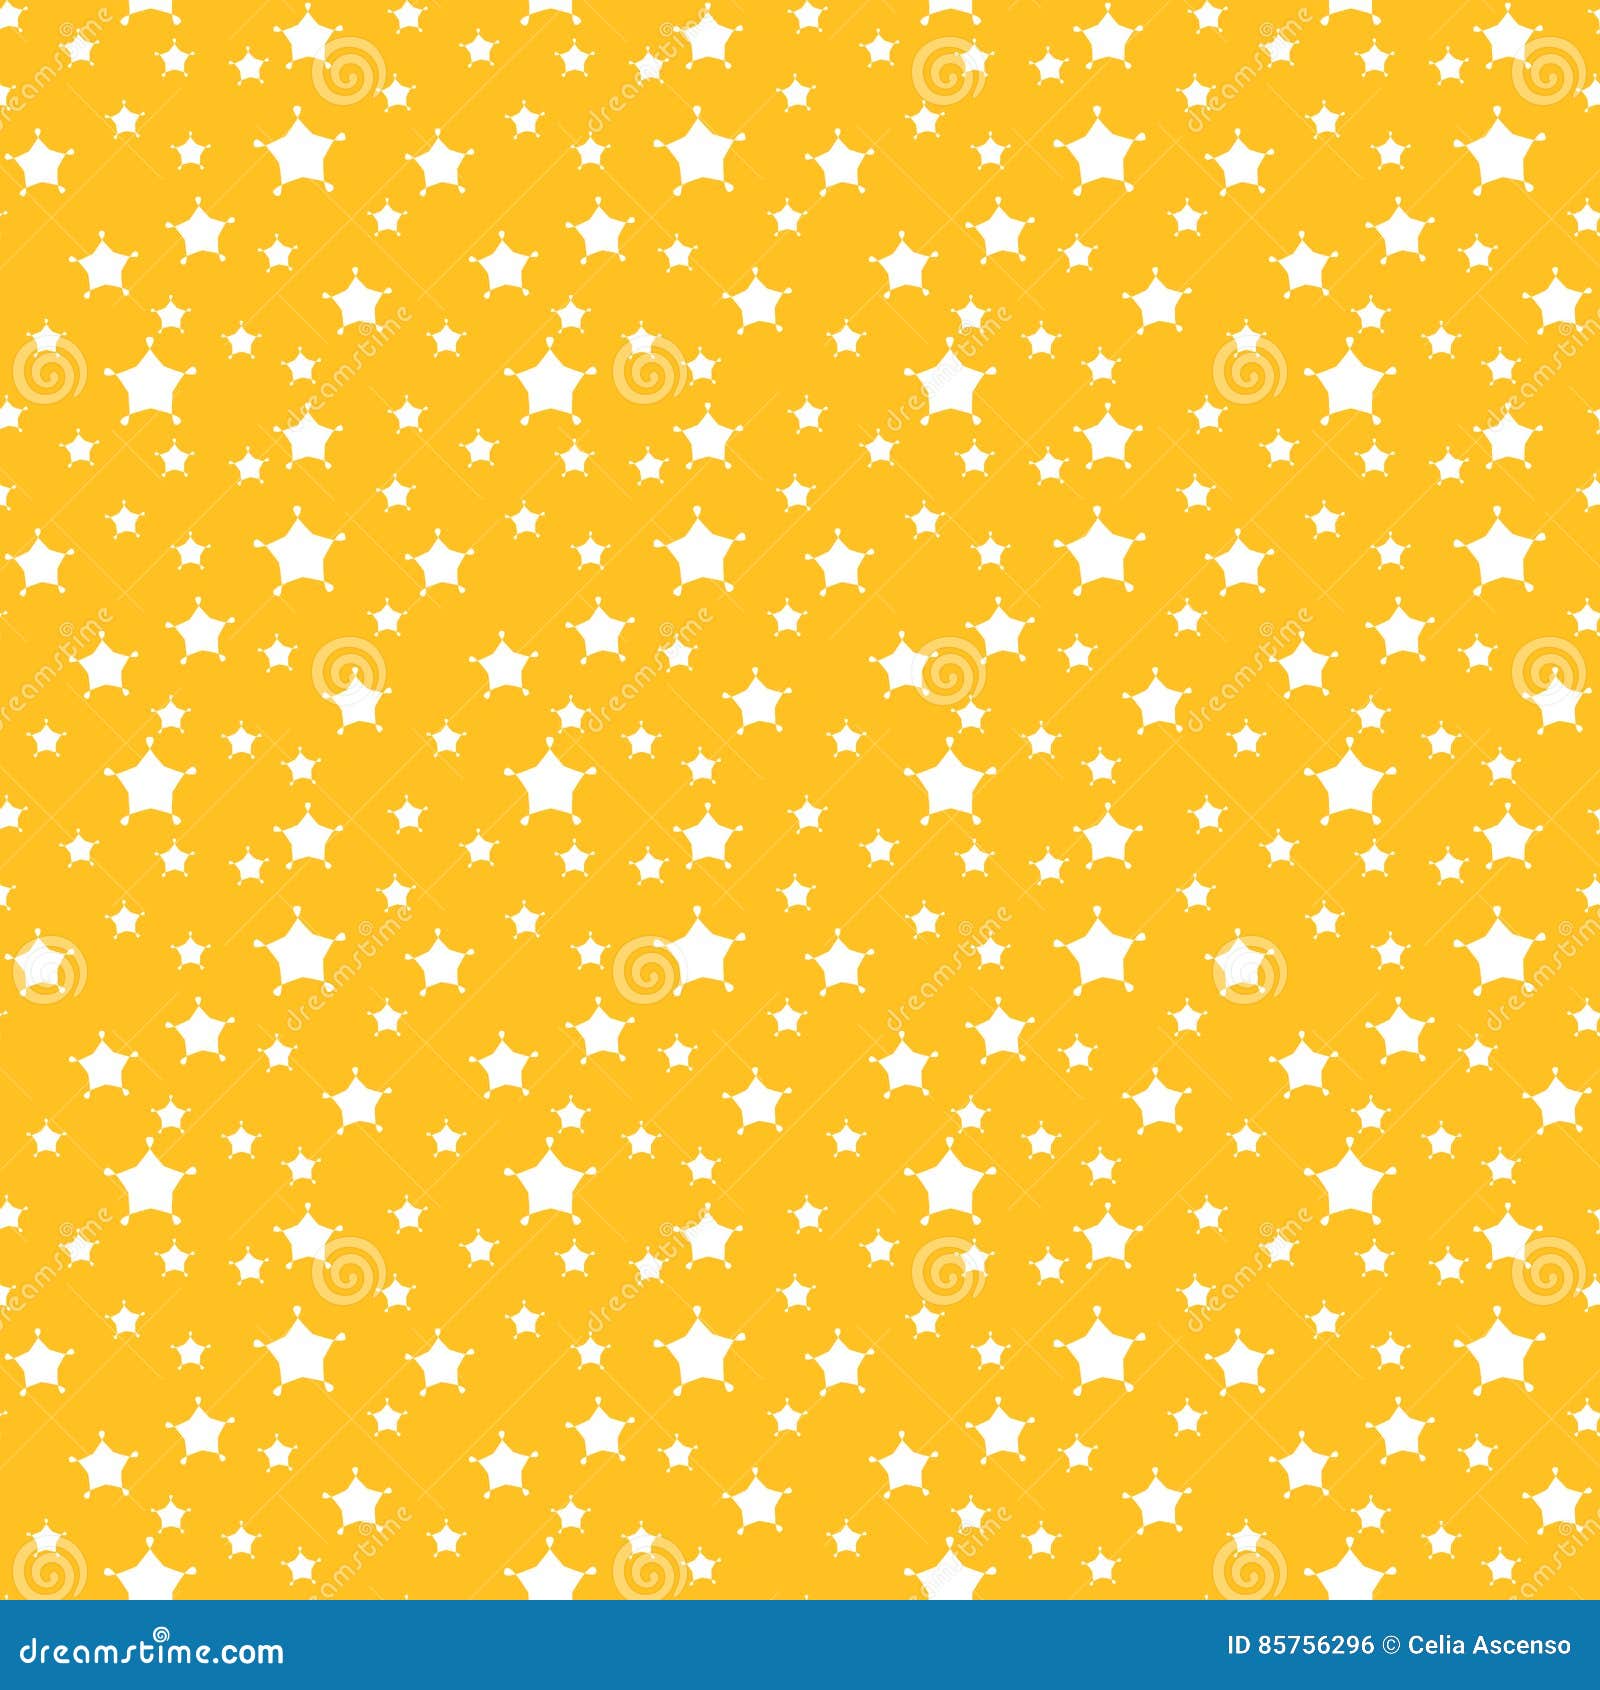 Tổng hợp 600+ Yellow background white stars Tải miễn phí, đa dạng kích thước